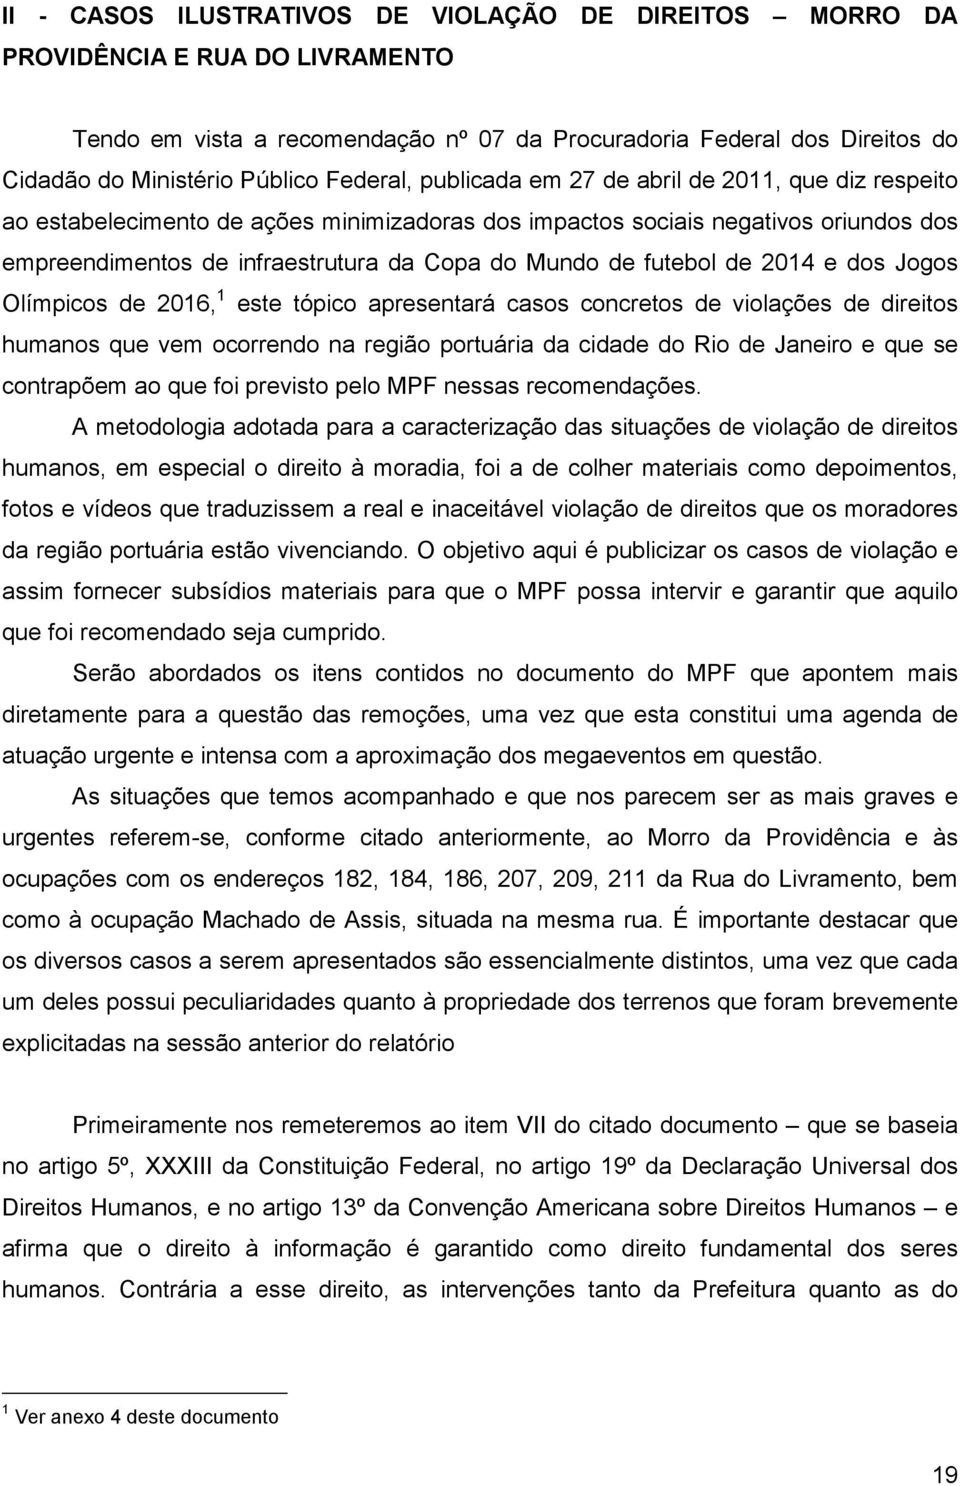 futebol de 2014 e dos Jogos Olímpicos de 2016, 1 este tópico apresentará casos concretos de violações de direitos humanos que vem ocorrendo na região portuária da cidade do Rio de Janeiro e que se